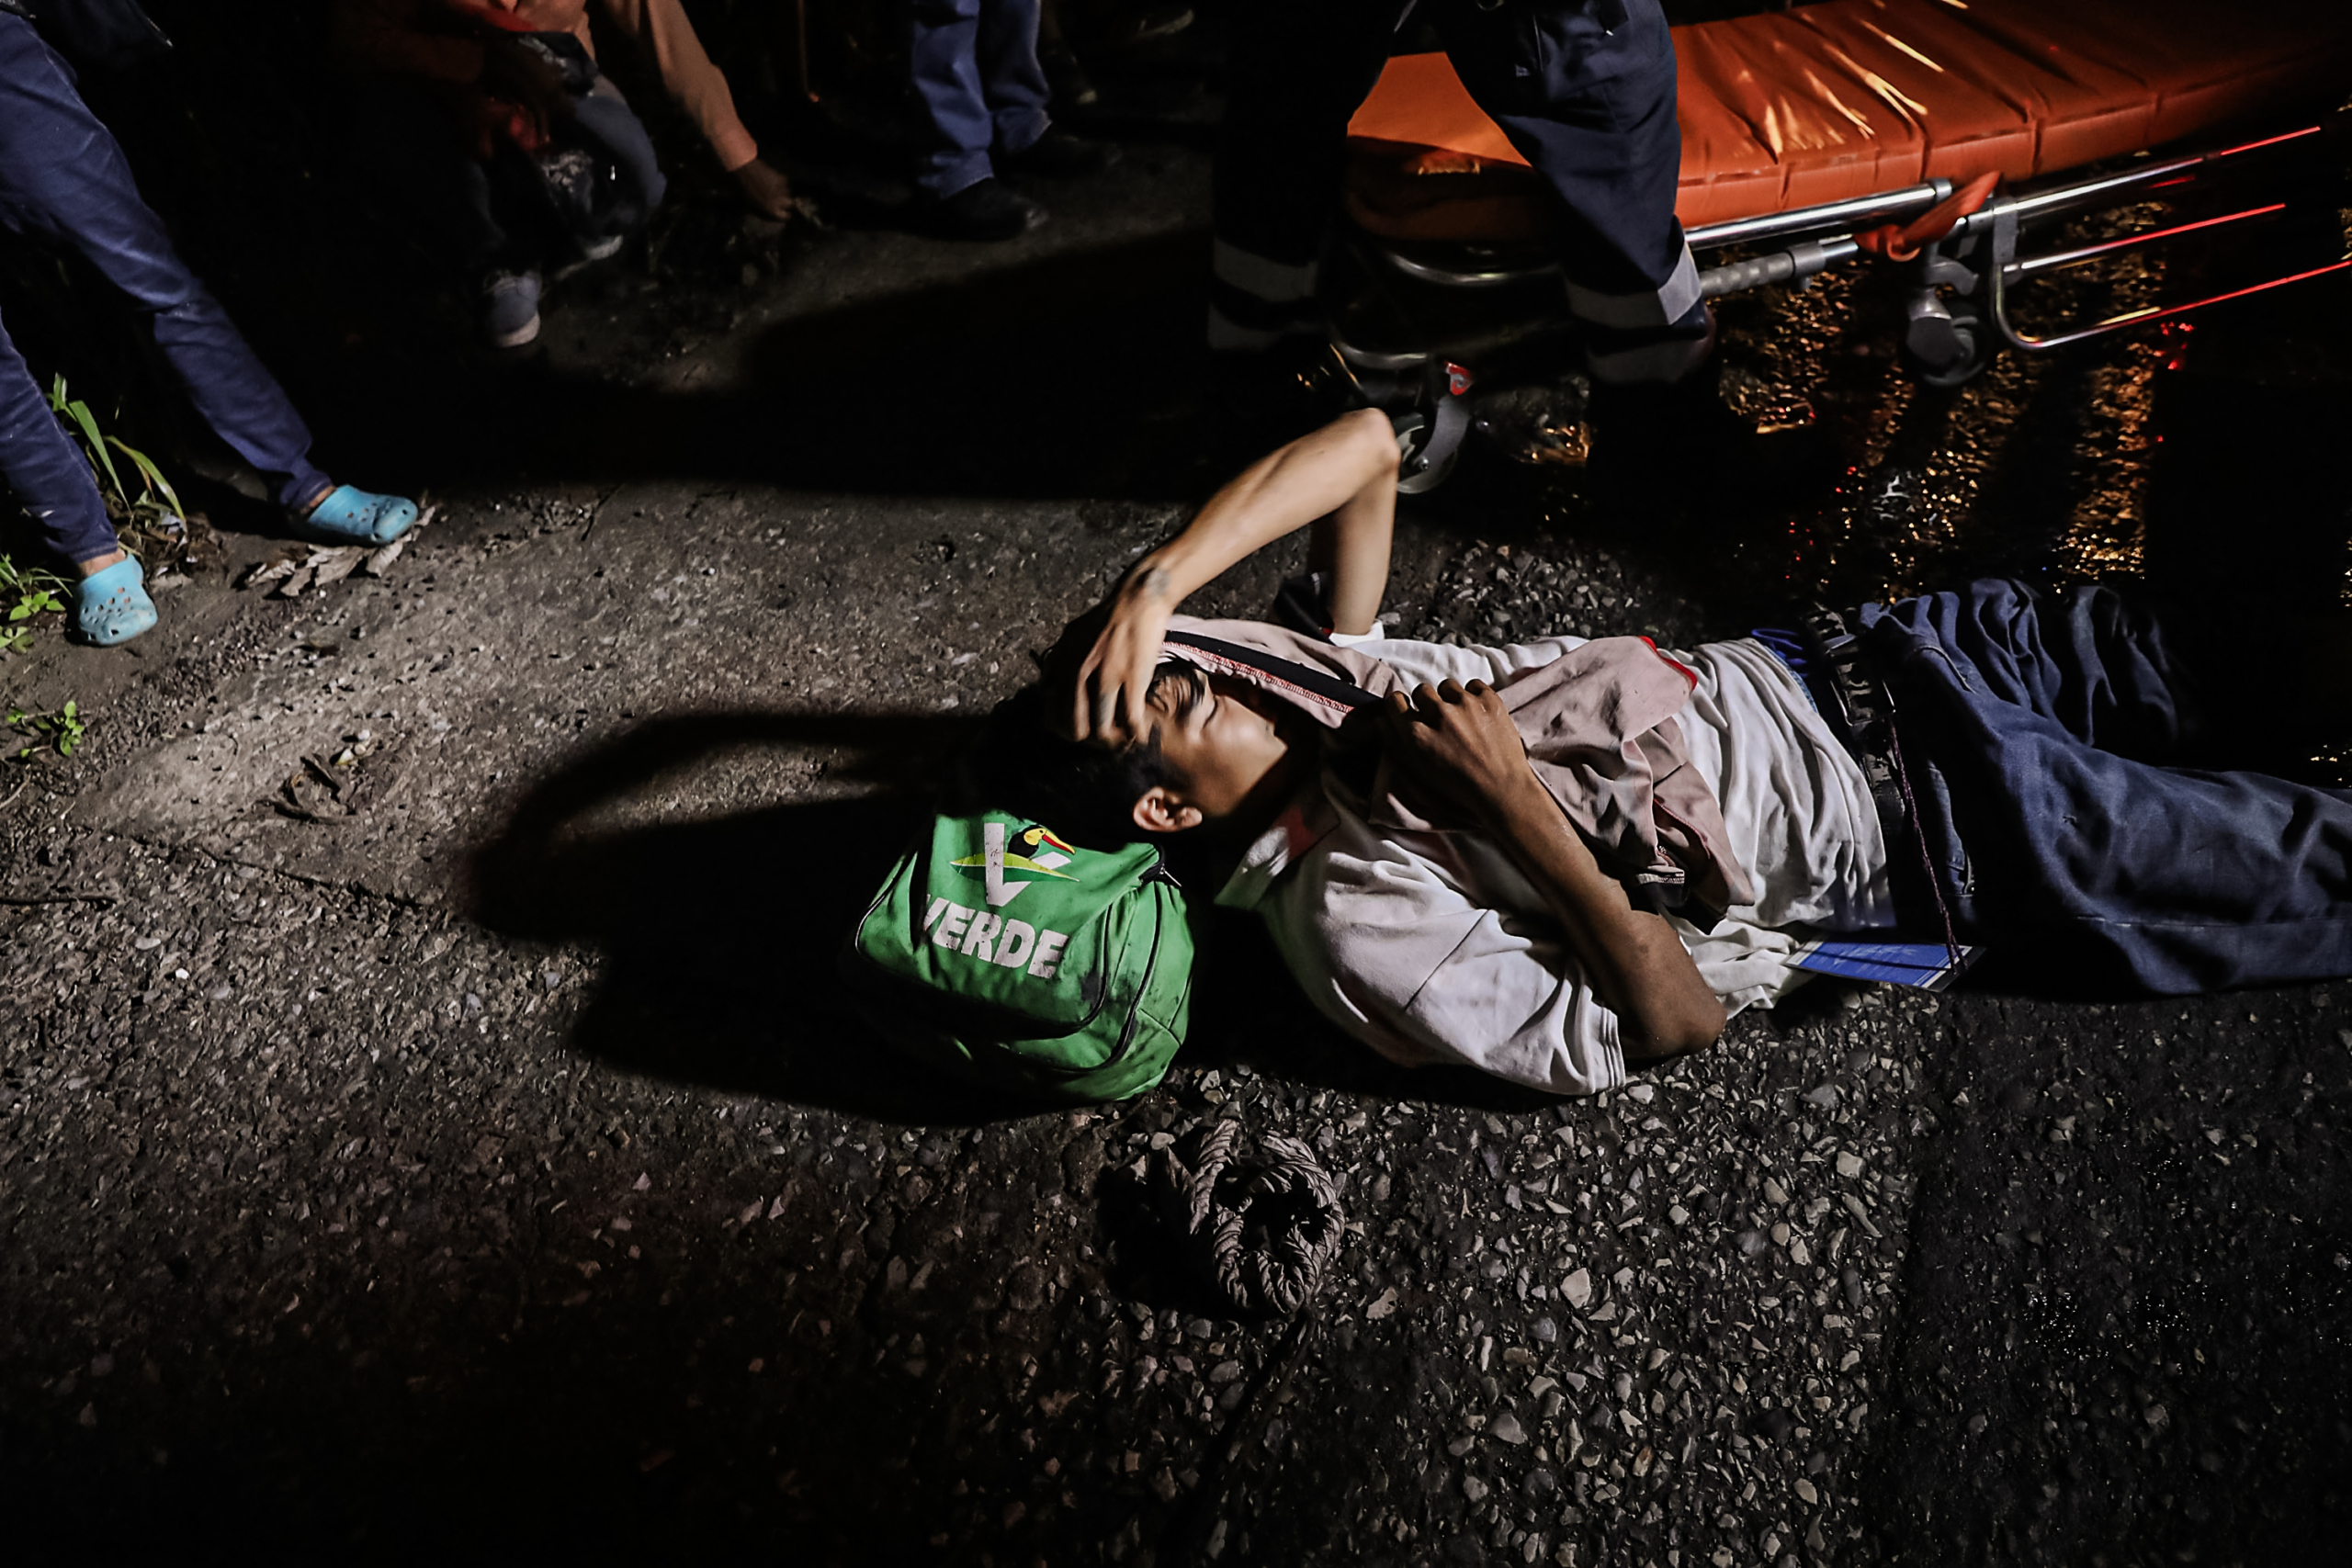 Một người đàn ông Salvador được nhân viên y tế sơ cứu sau khi bị đứt chân khi cố nhảy lên xe tải ở Matias Romero, Mexico, vào ngày 02/11/2018. (Ảnh: Spencer Platt/Getty Images)